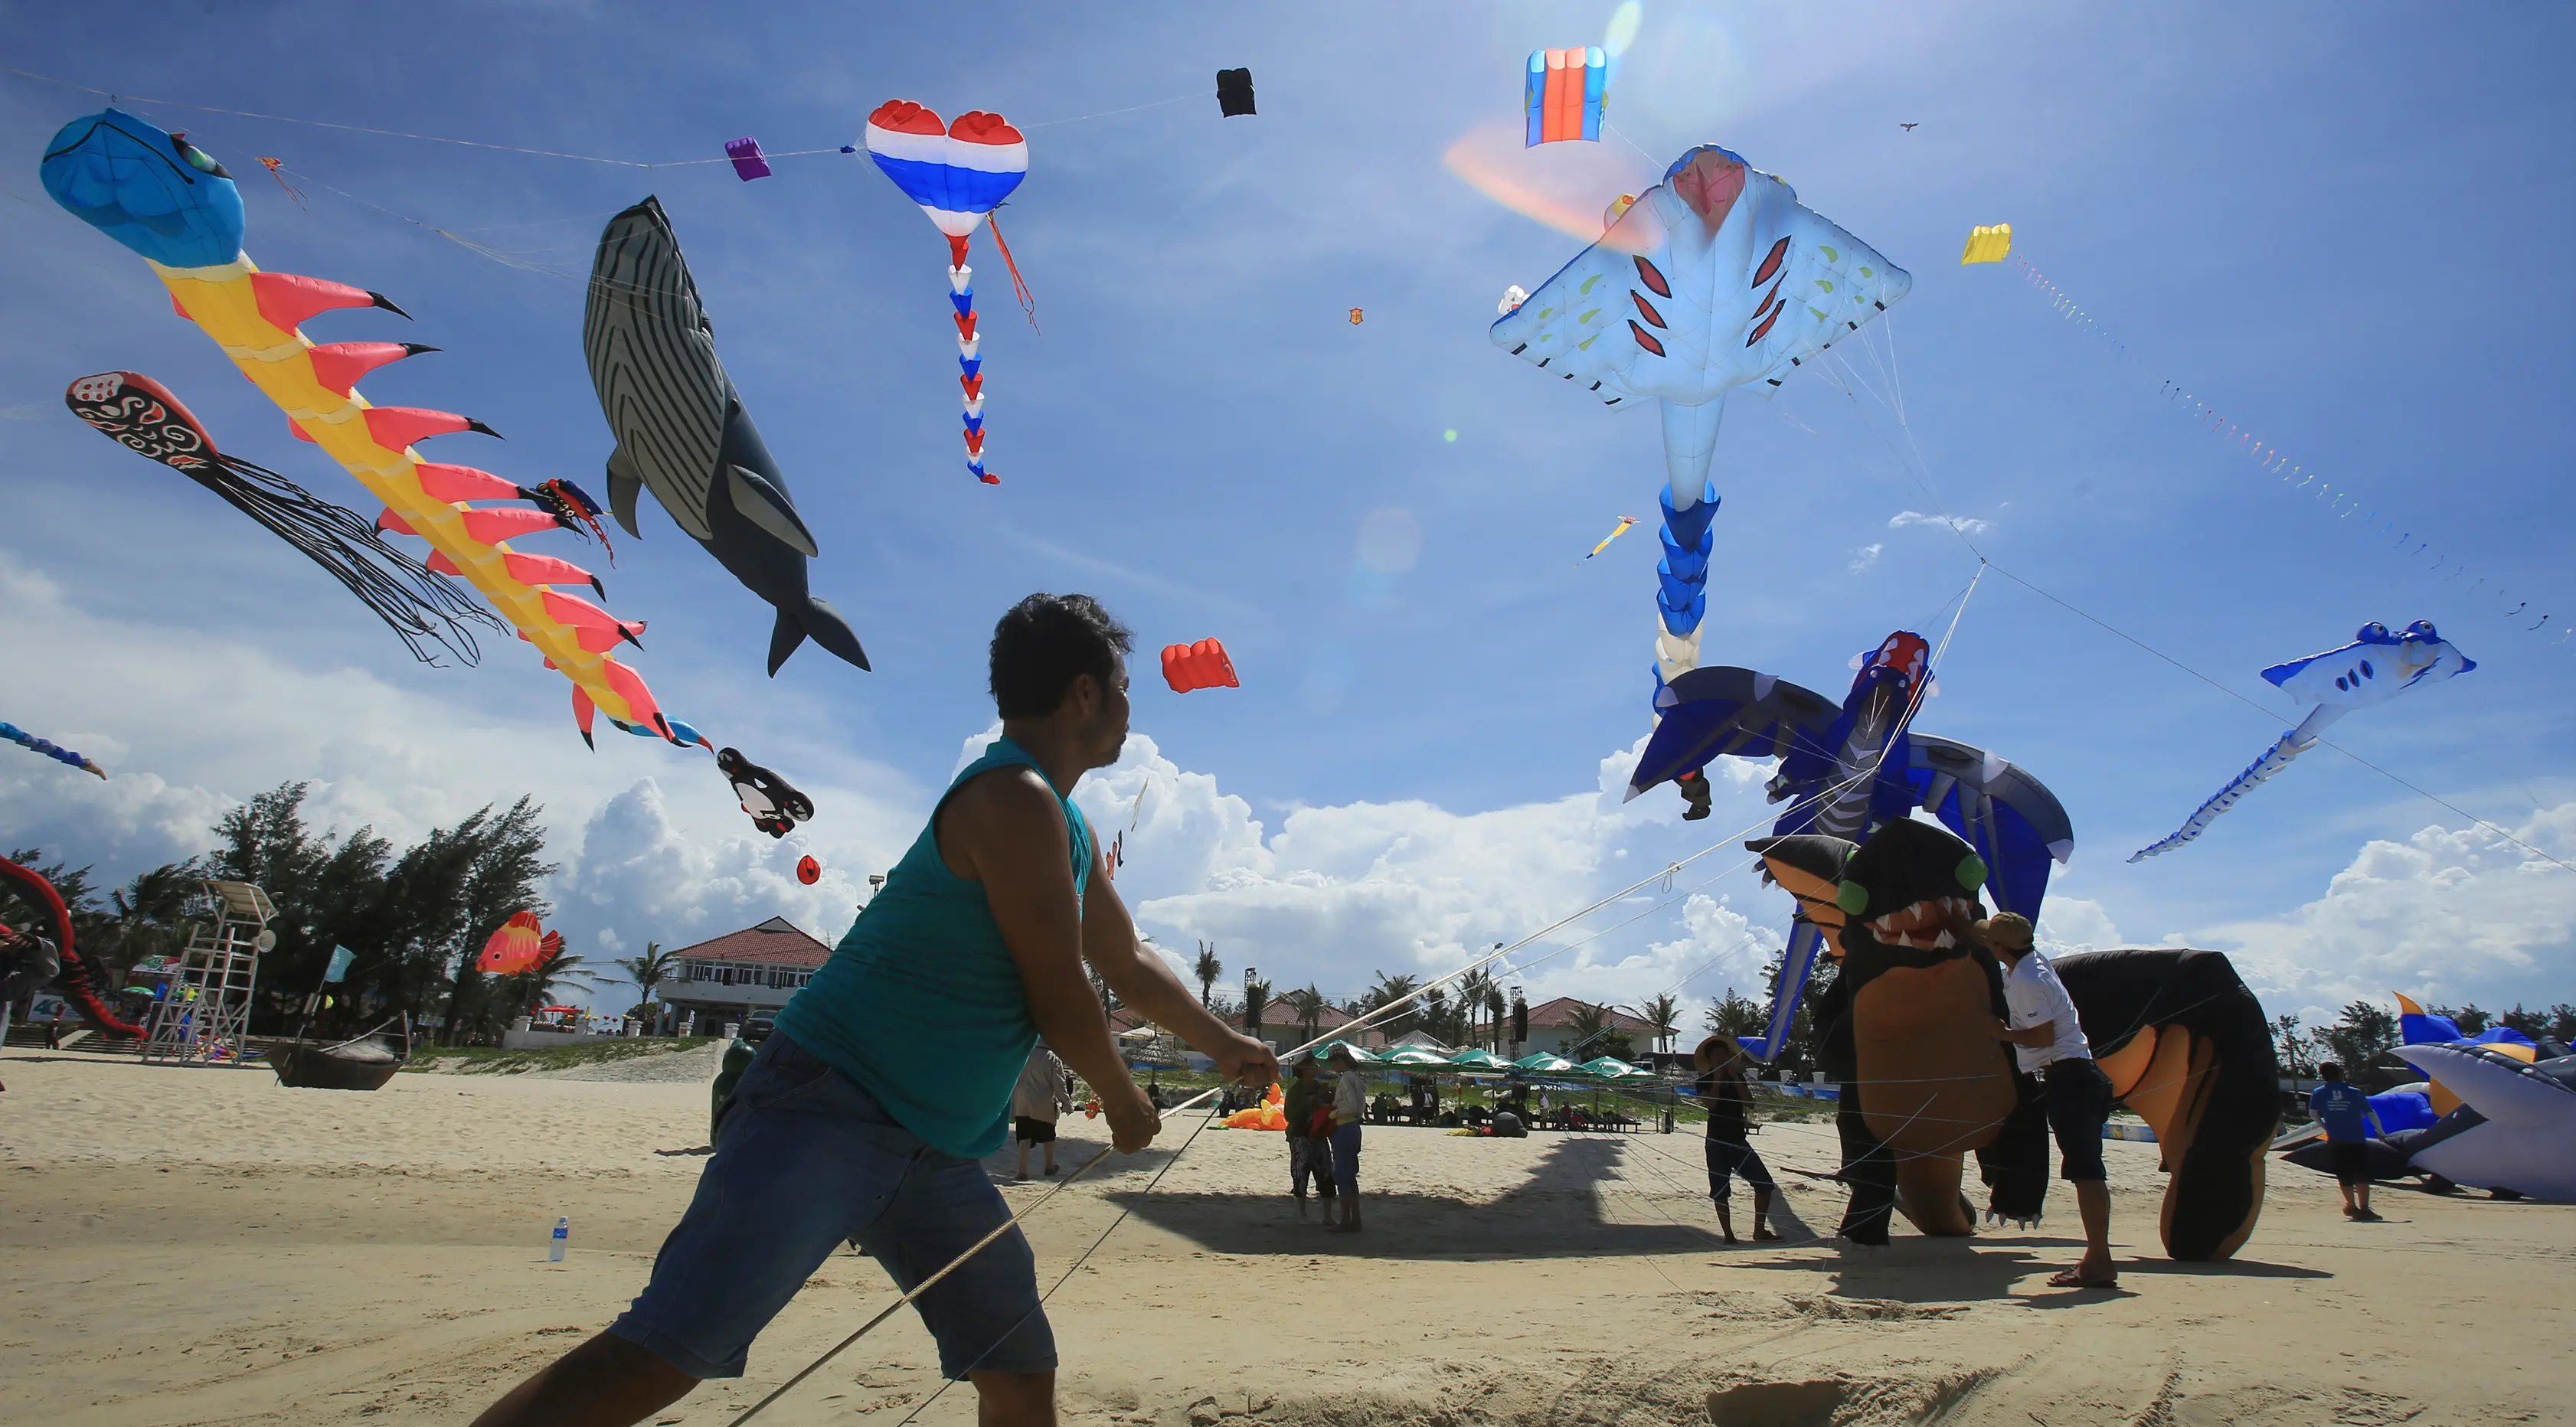 Seorang peserta menerbangkan layang-layangnya diatas pantai Tam Thanh selama Festival Internasional Kite di Quang Nam, Vietnam (11/6). Dalam festival ini, pengrajin menunjukan keterampilan membuat, serta menerbangkan layang-layangnya. (AP Photo/Hau Dinh)